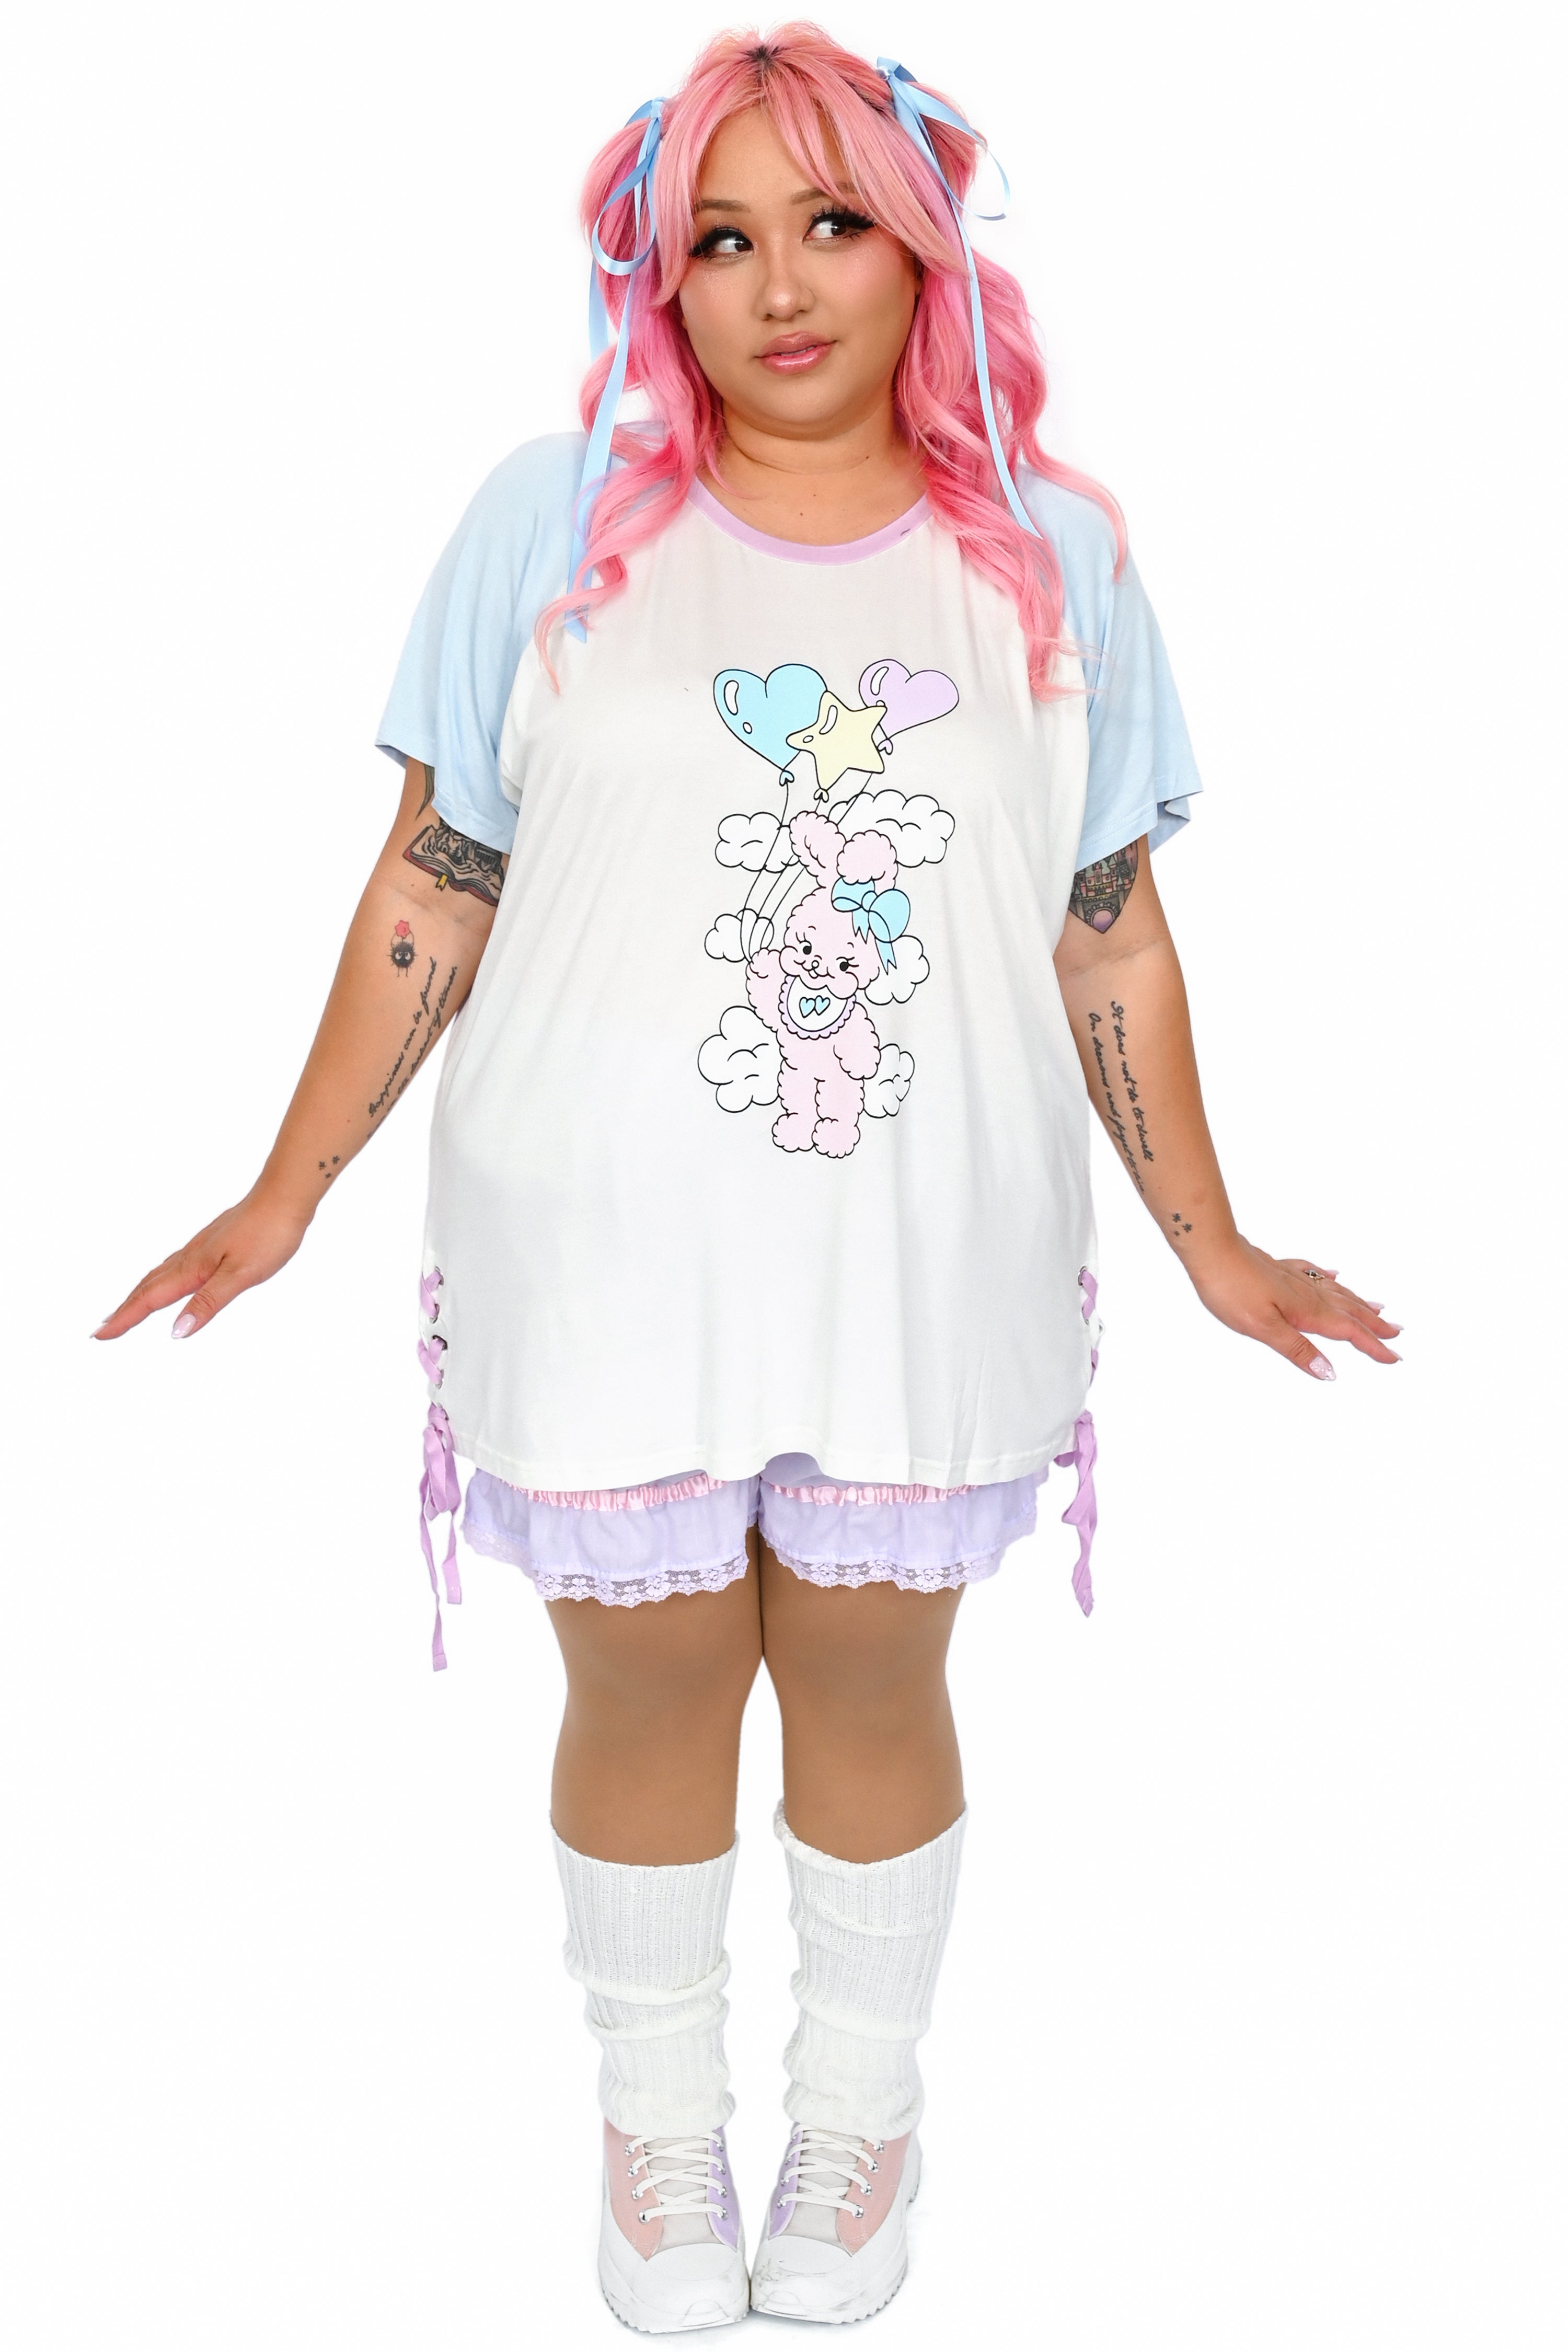 MilkySippyCup Balloon Bunny Tshirt